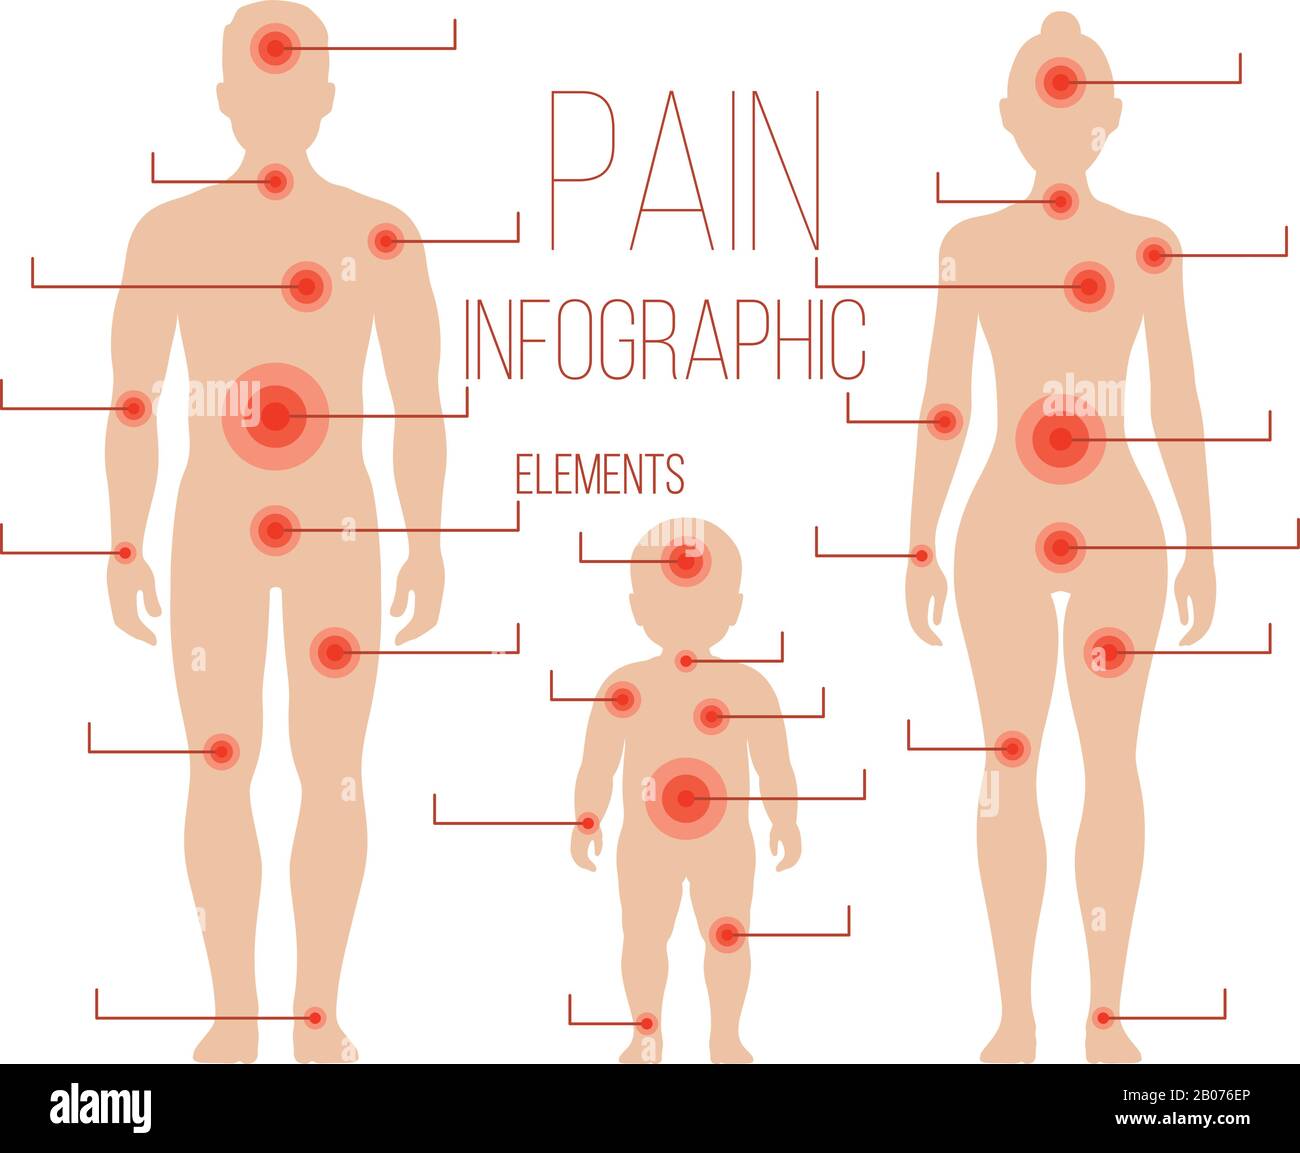 Uomo, donna, silhouette bambino con punti di dolore. Elementi vettoriali per infografica medica. Illustrazione della famiglia dei corpi umani Illustrazione Vettoriale